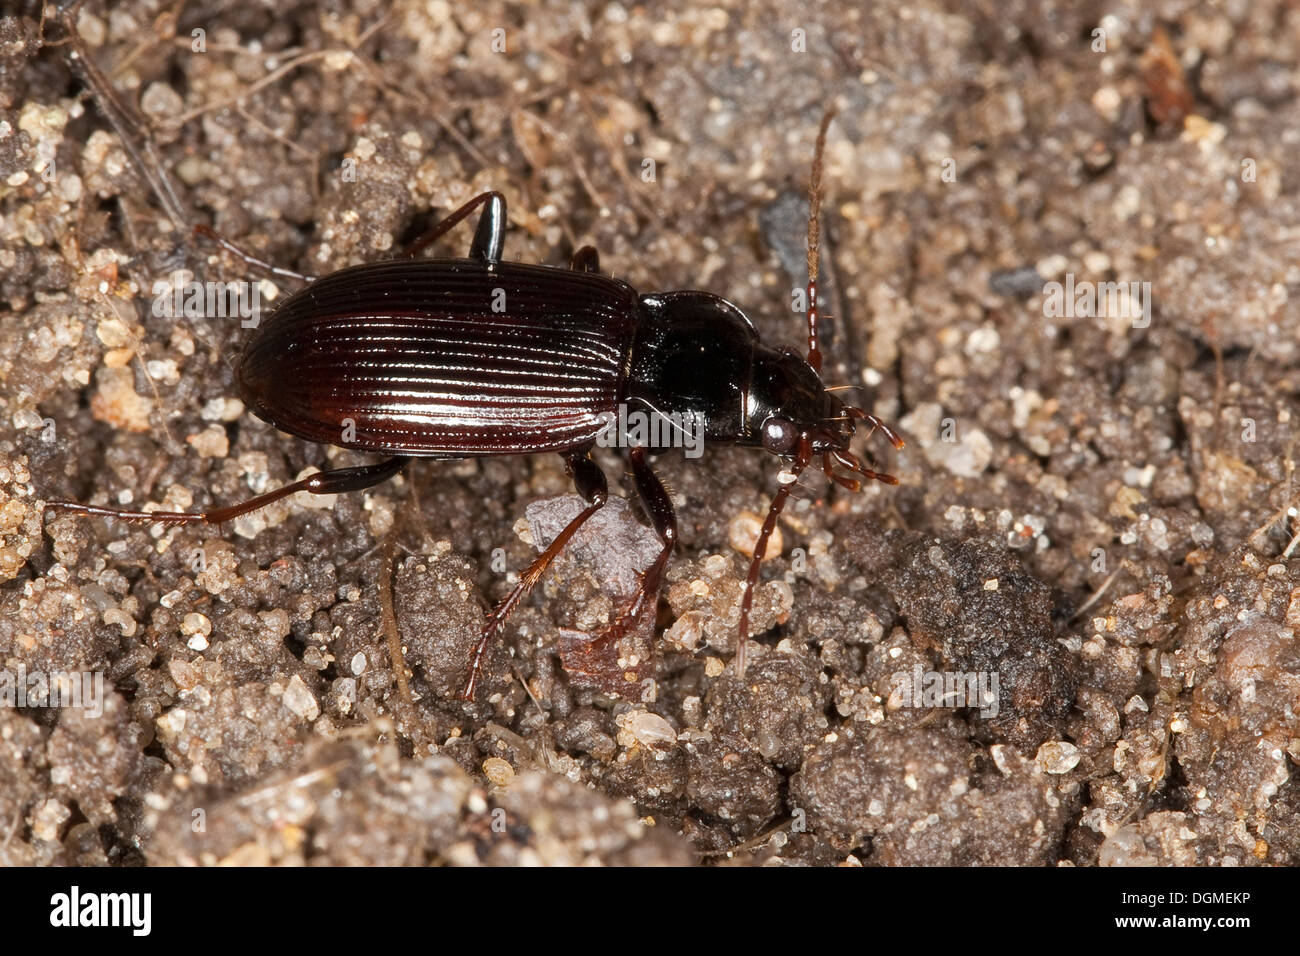 European Gazelle Beetle, ground beetle, Gewöhnlicher Dammläufer, Pechschwarzer Dammläufer, Laufkäfer, Nebria brevicollis Stock Photo